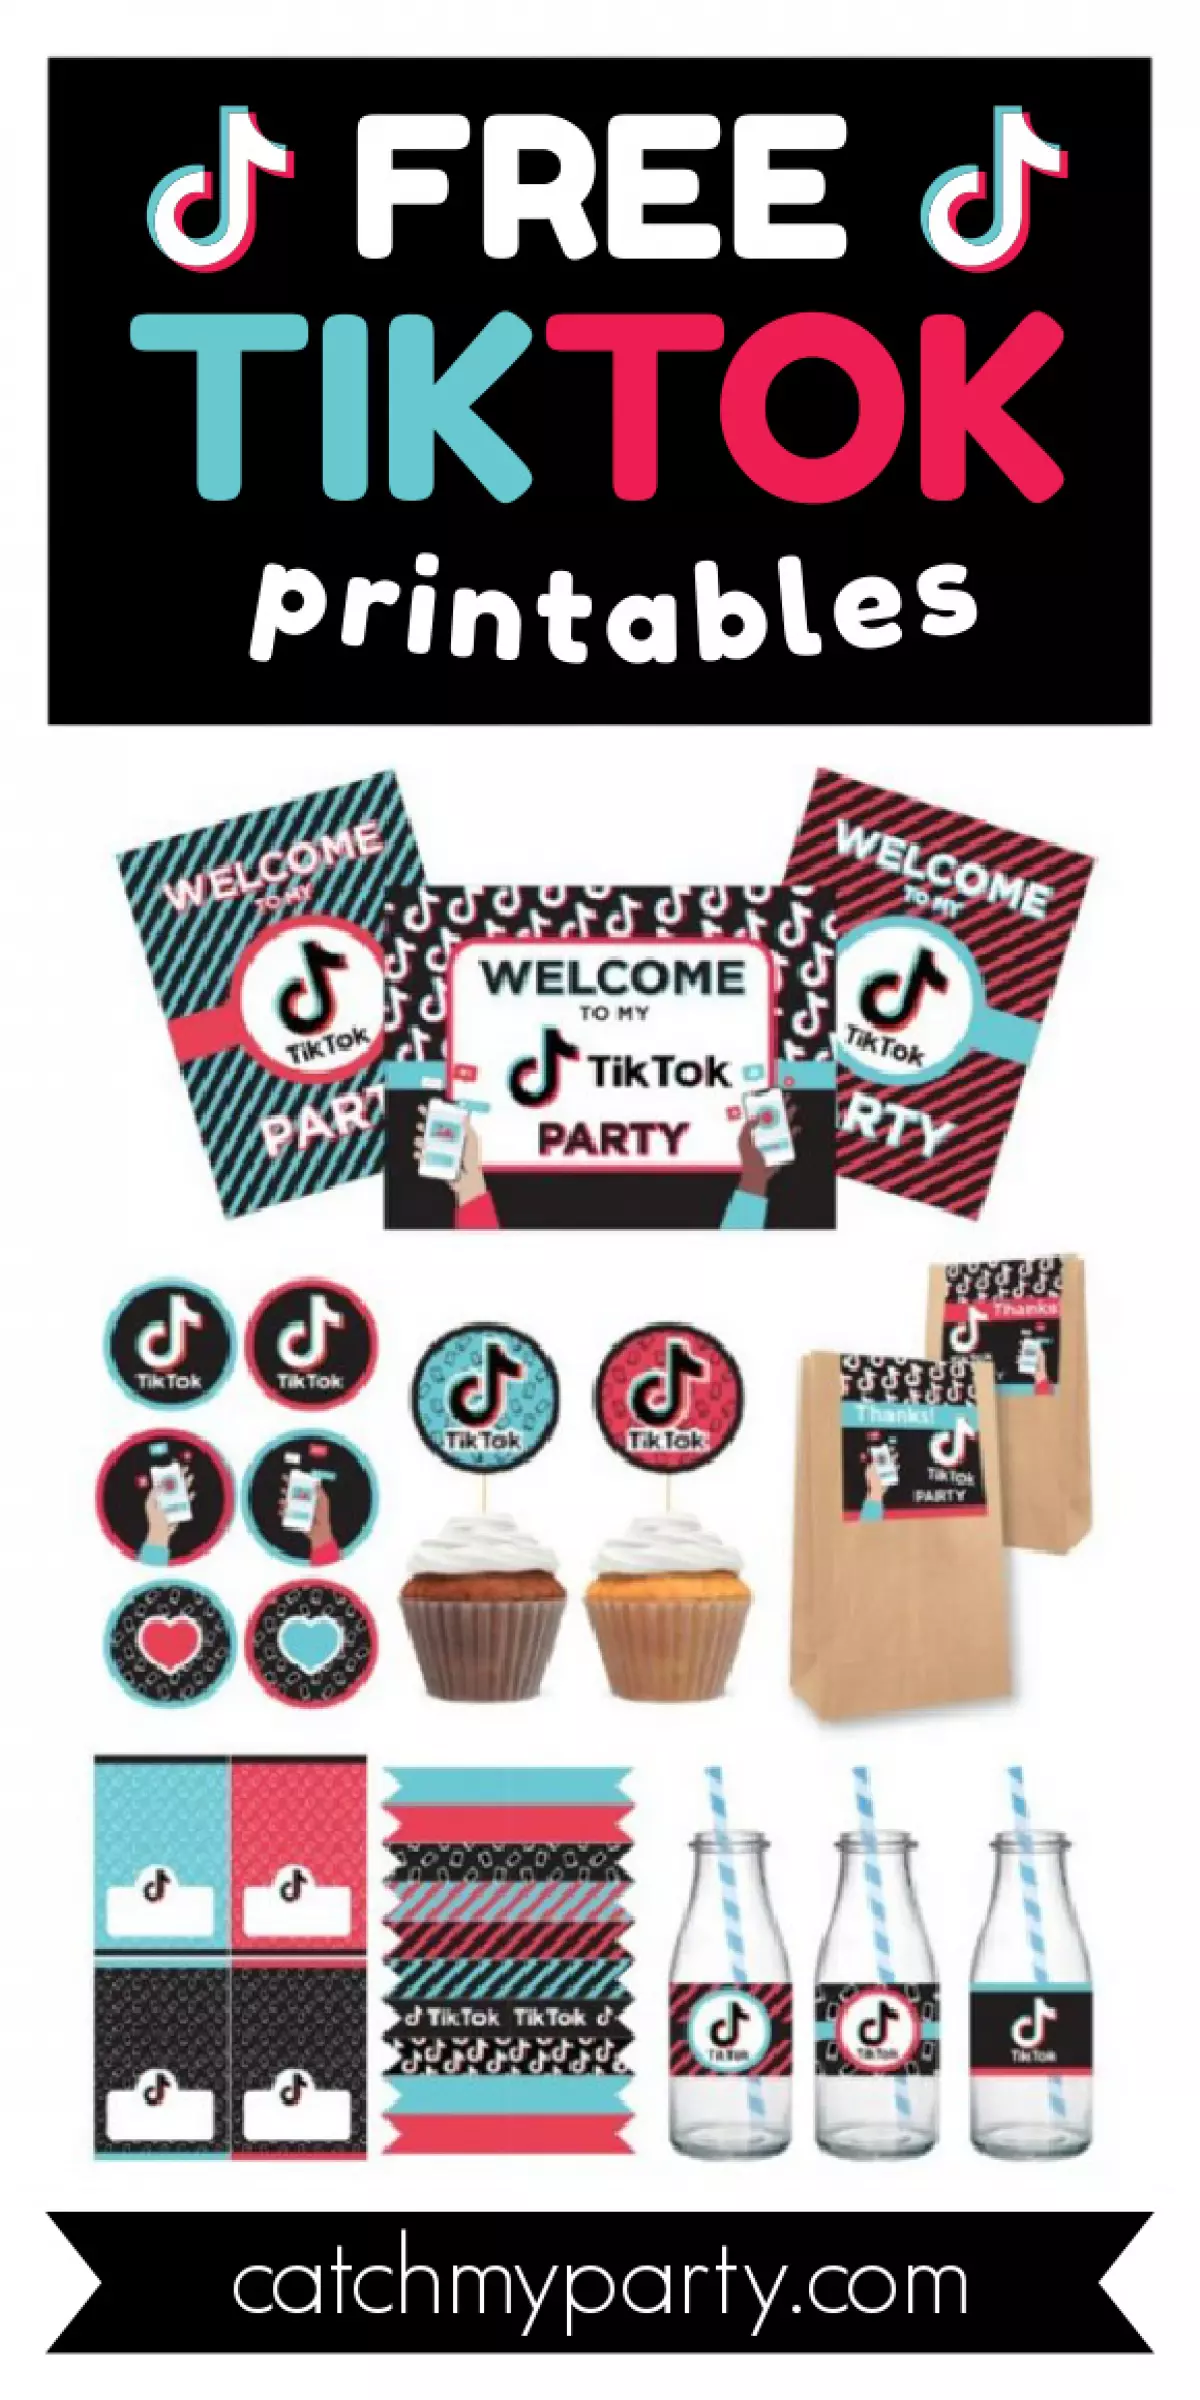 Download These Fun Free TikTok Party Printables